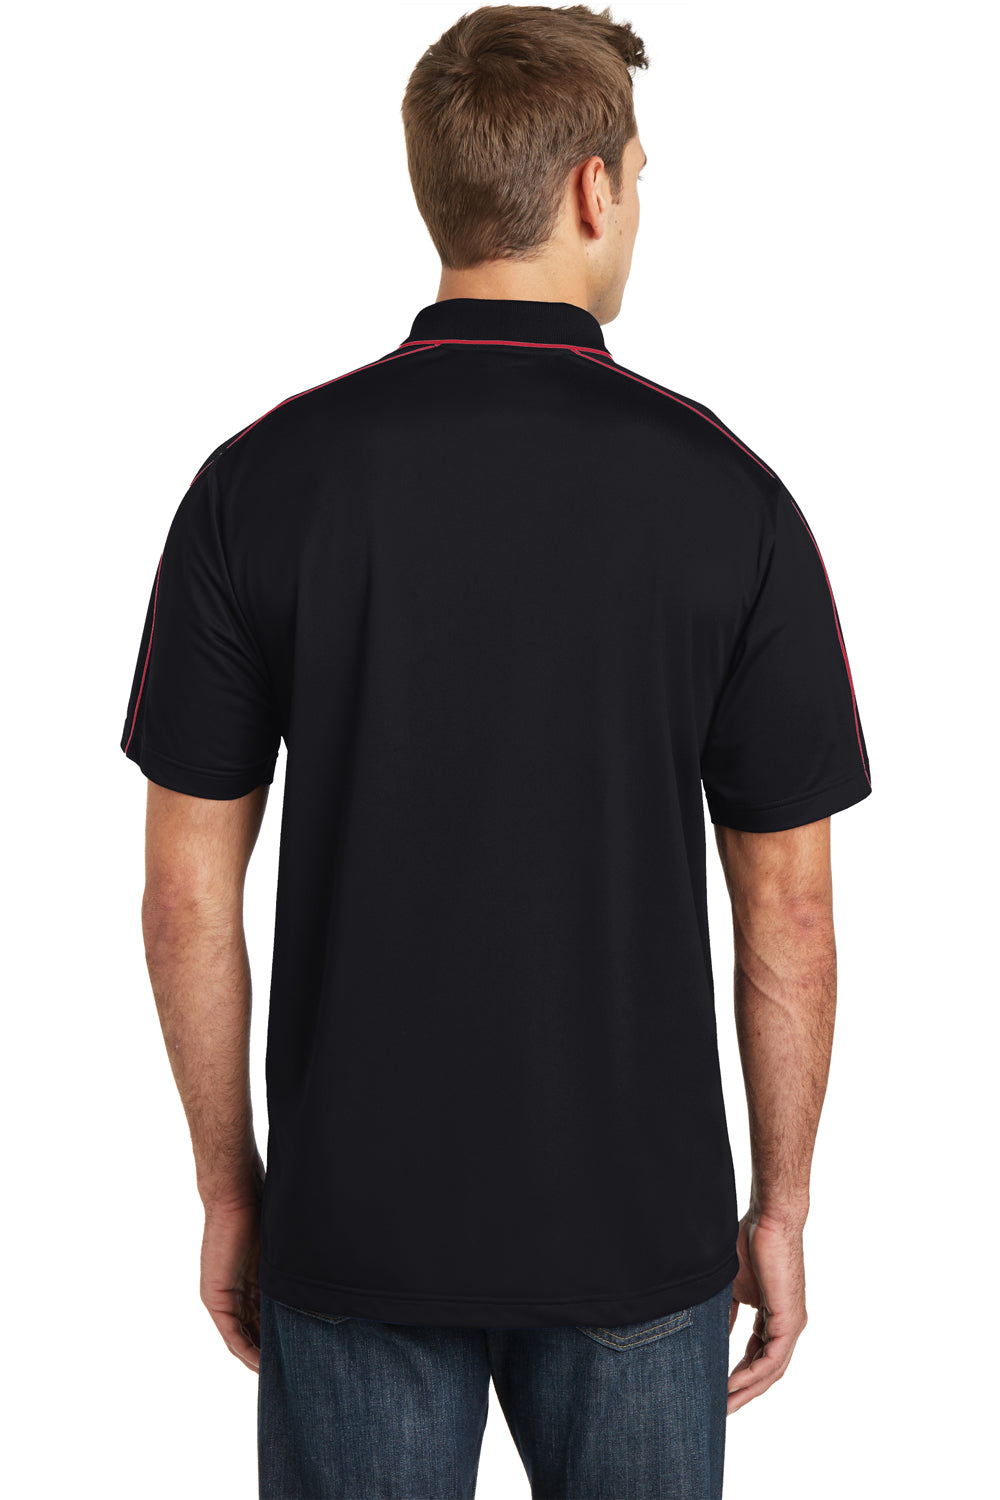 Sport-Tek ST653 Mens Sport-Wick Moisture Wicking Short Sleeve Polo Shirt Black/Red Back